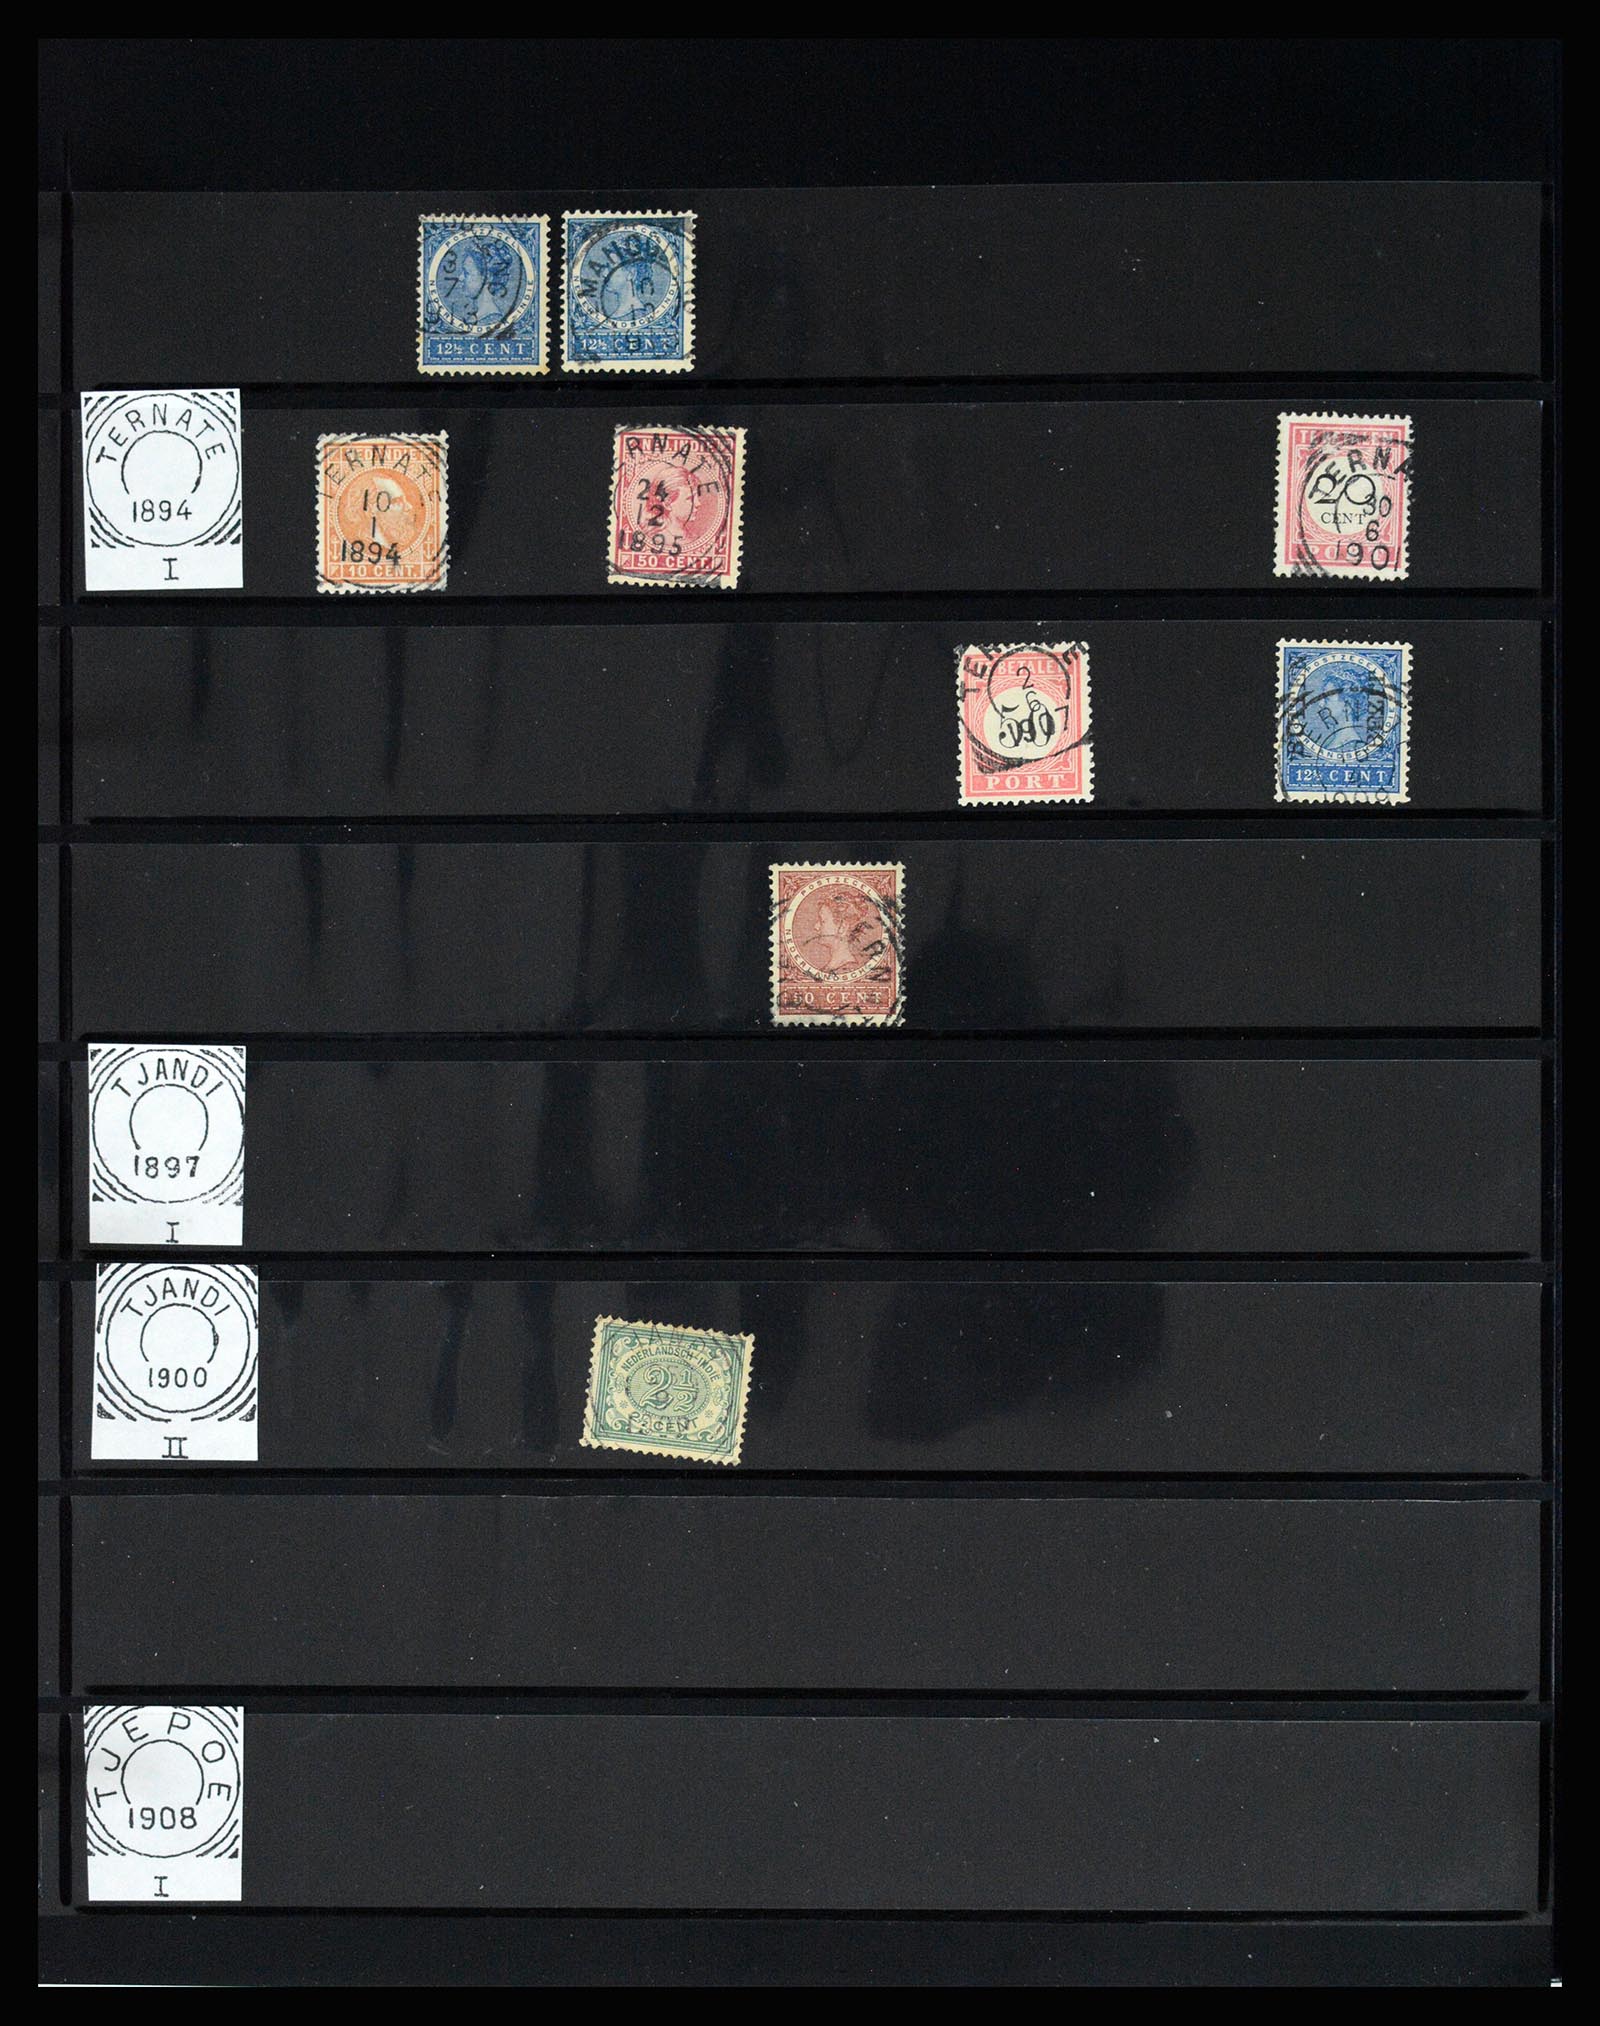 36512 158 - Stamp collection 36512 Nederlands Indië stempels 1872-1930.